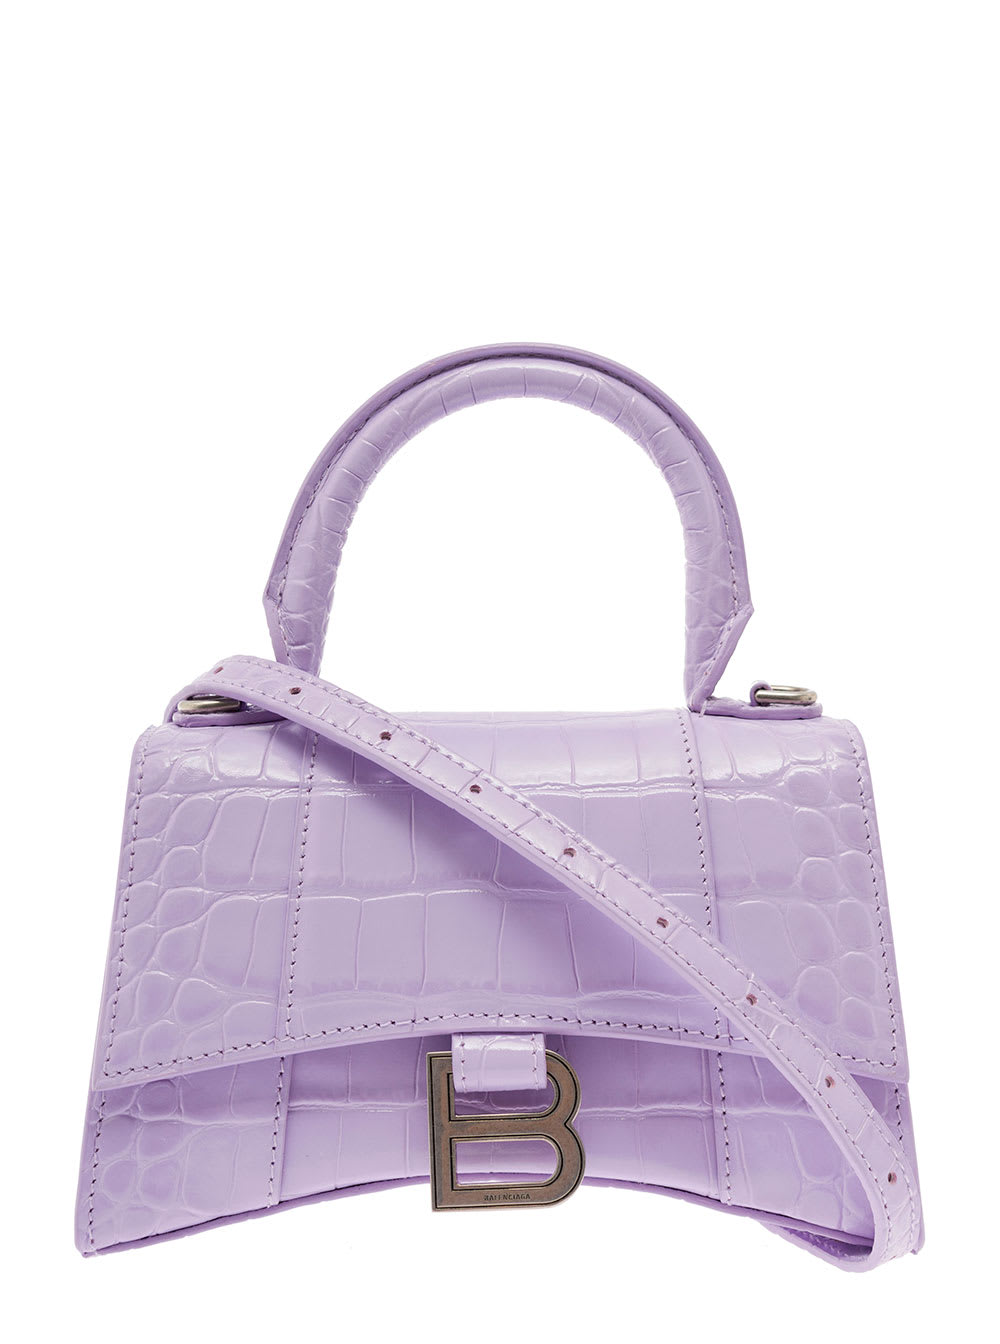 Balenciaga Hourglass Xs Lilac Crocodile Printed Leather Handbag Woman